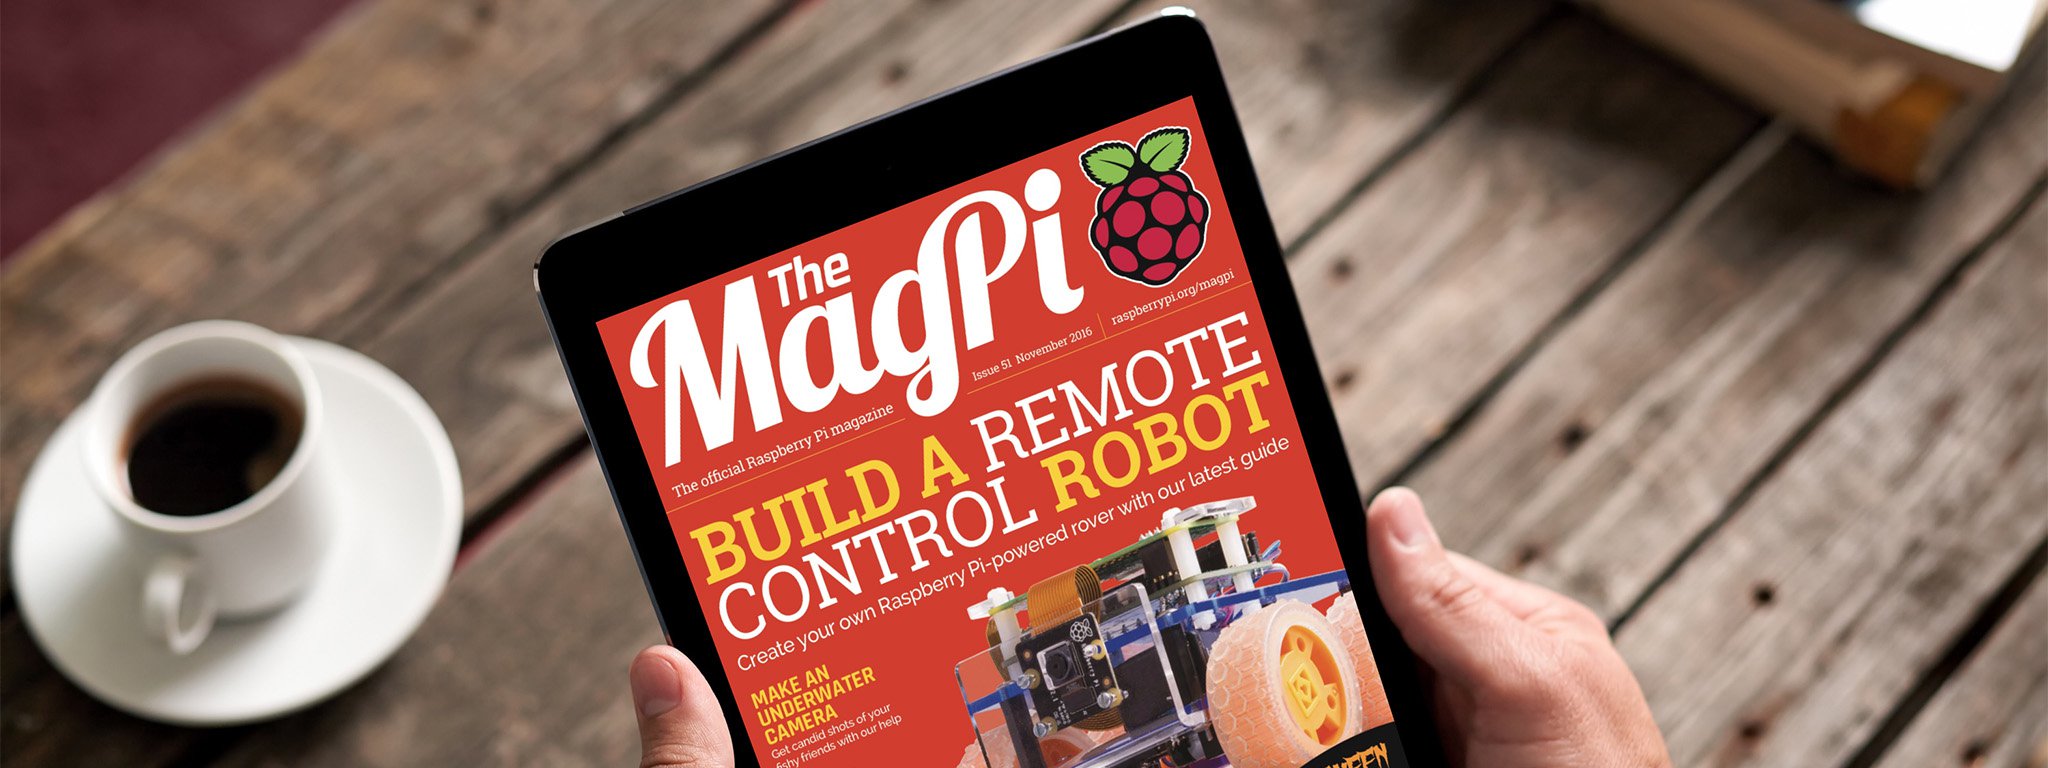 MagPi: Bộ eBook hướng dẫn về Raspberry Pi, rất hay, miễn phí, PDF, dạy đơn giản đến chuyên sâu [HOT]